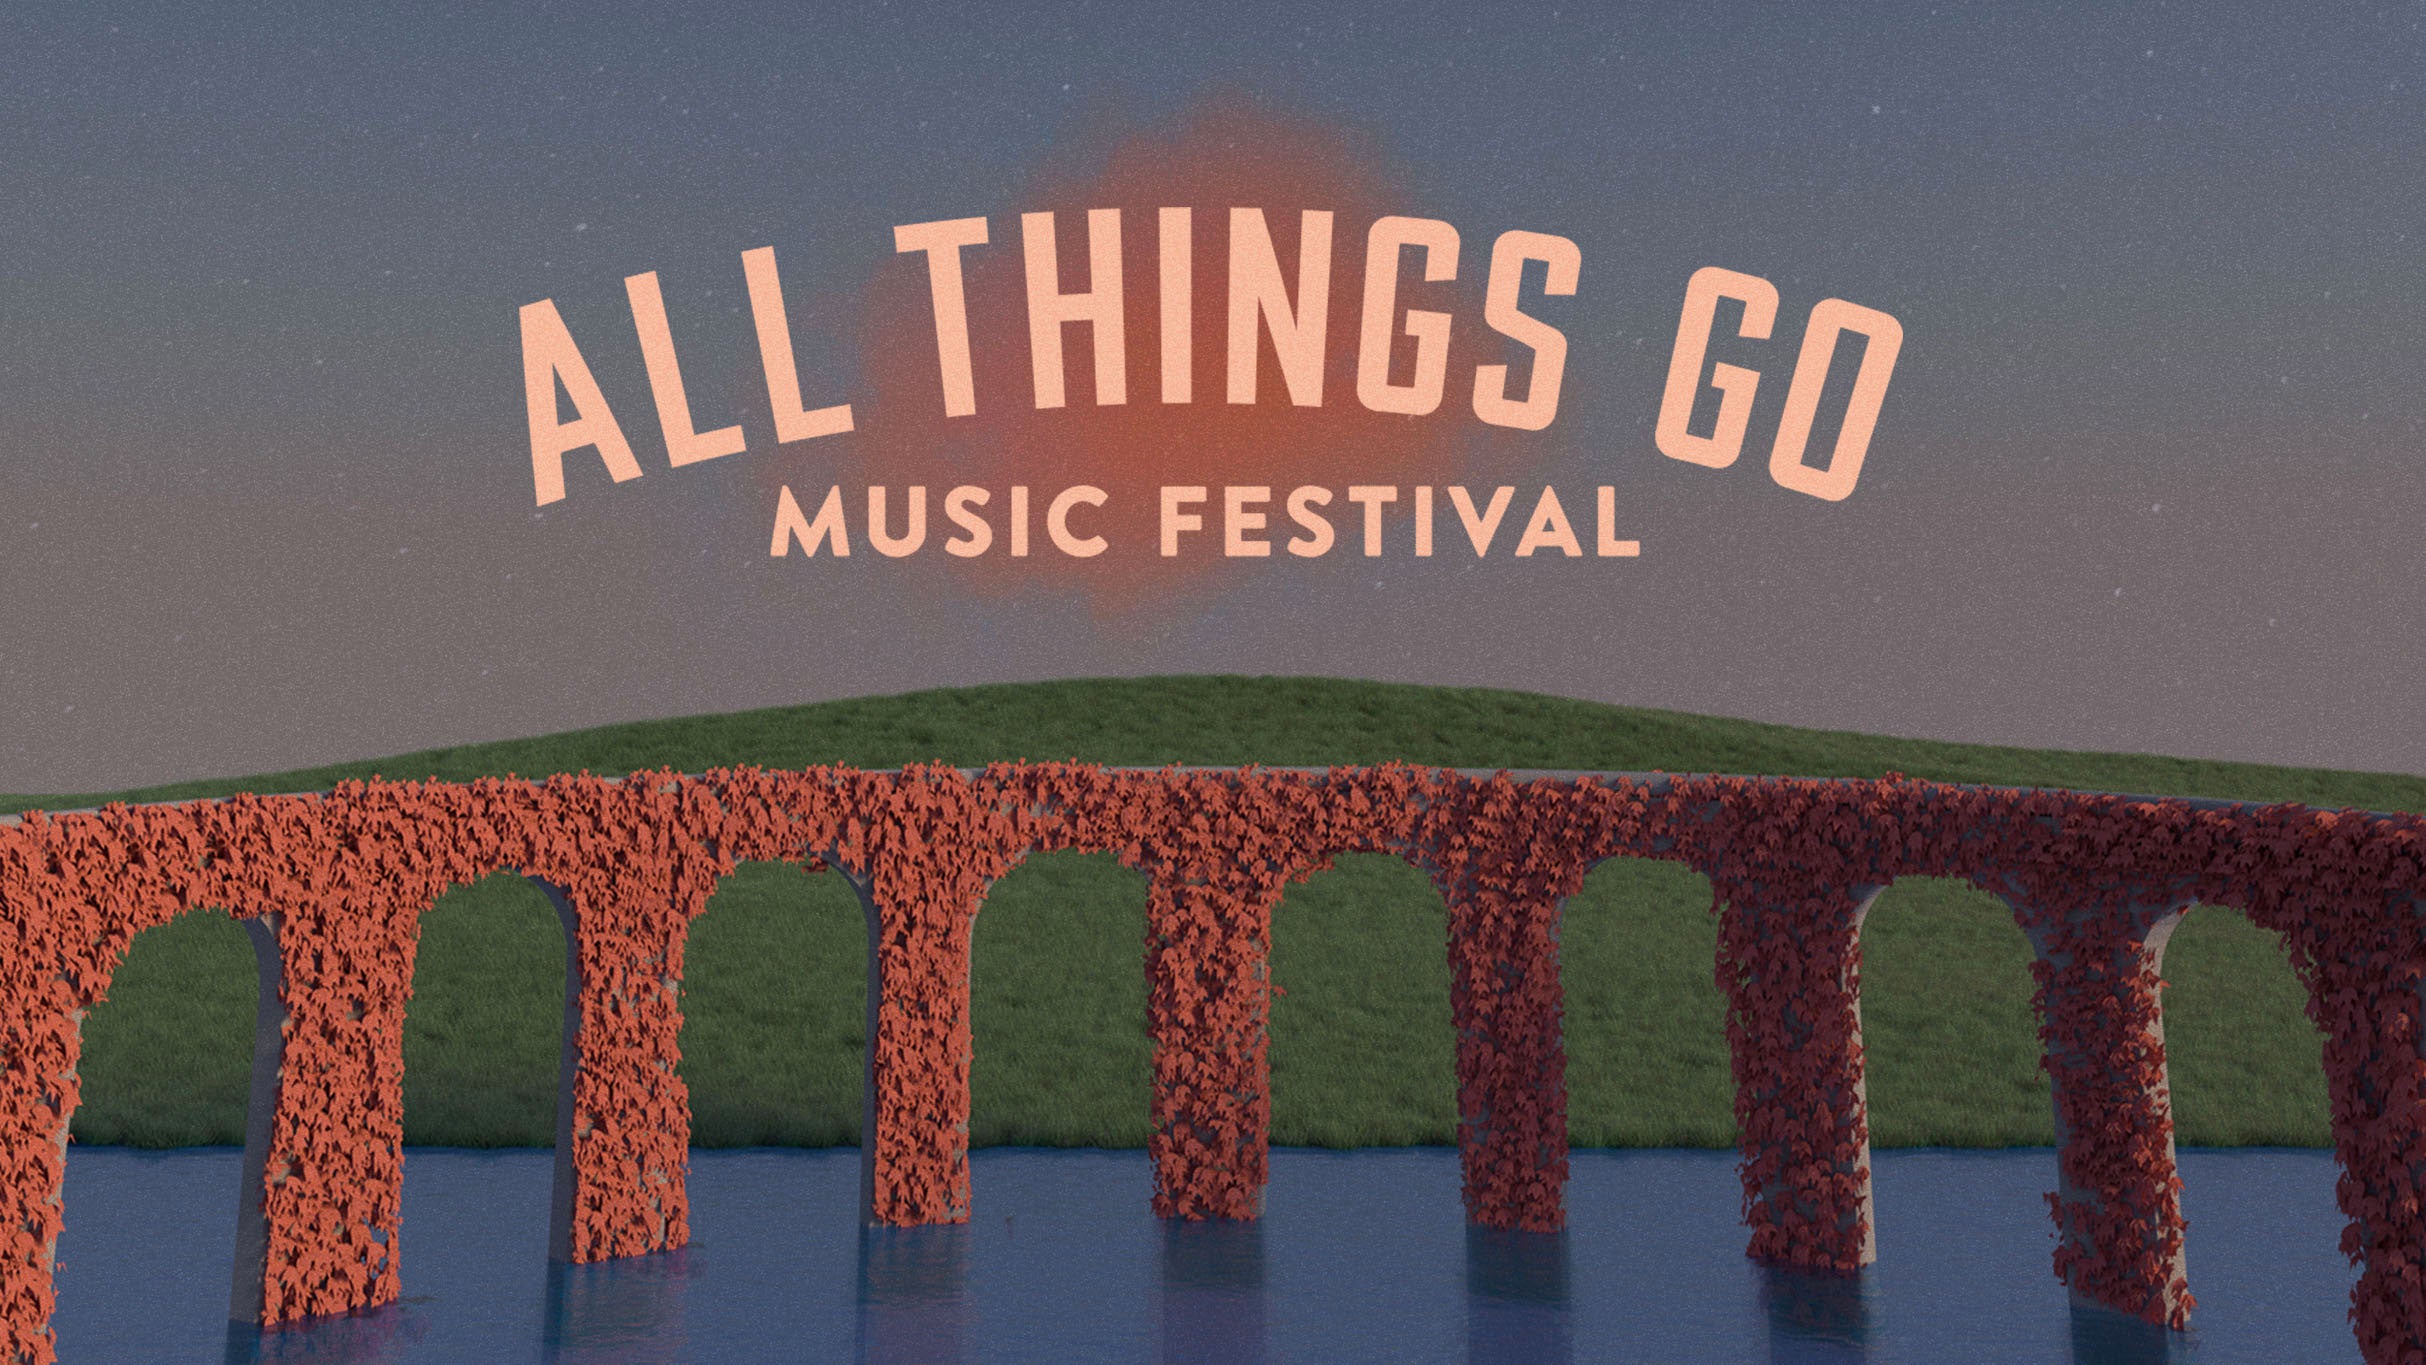 All Things Go Music Festival - Sunday presale information on freepresalepasswords.com